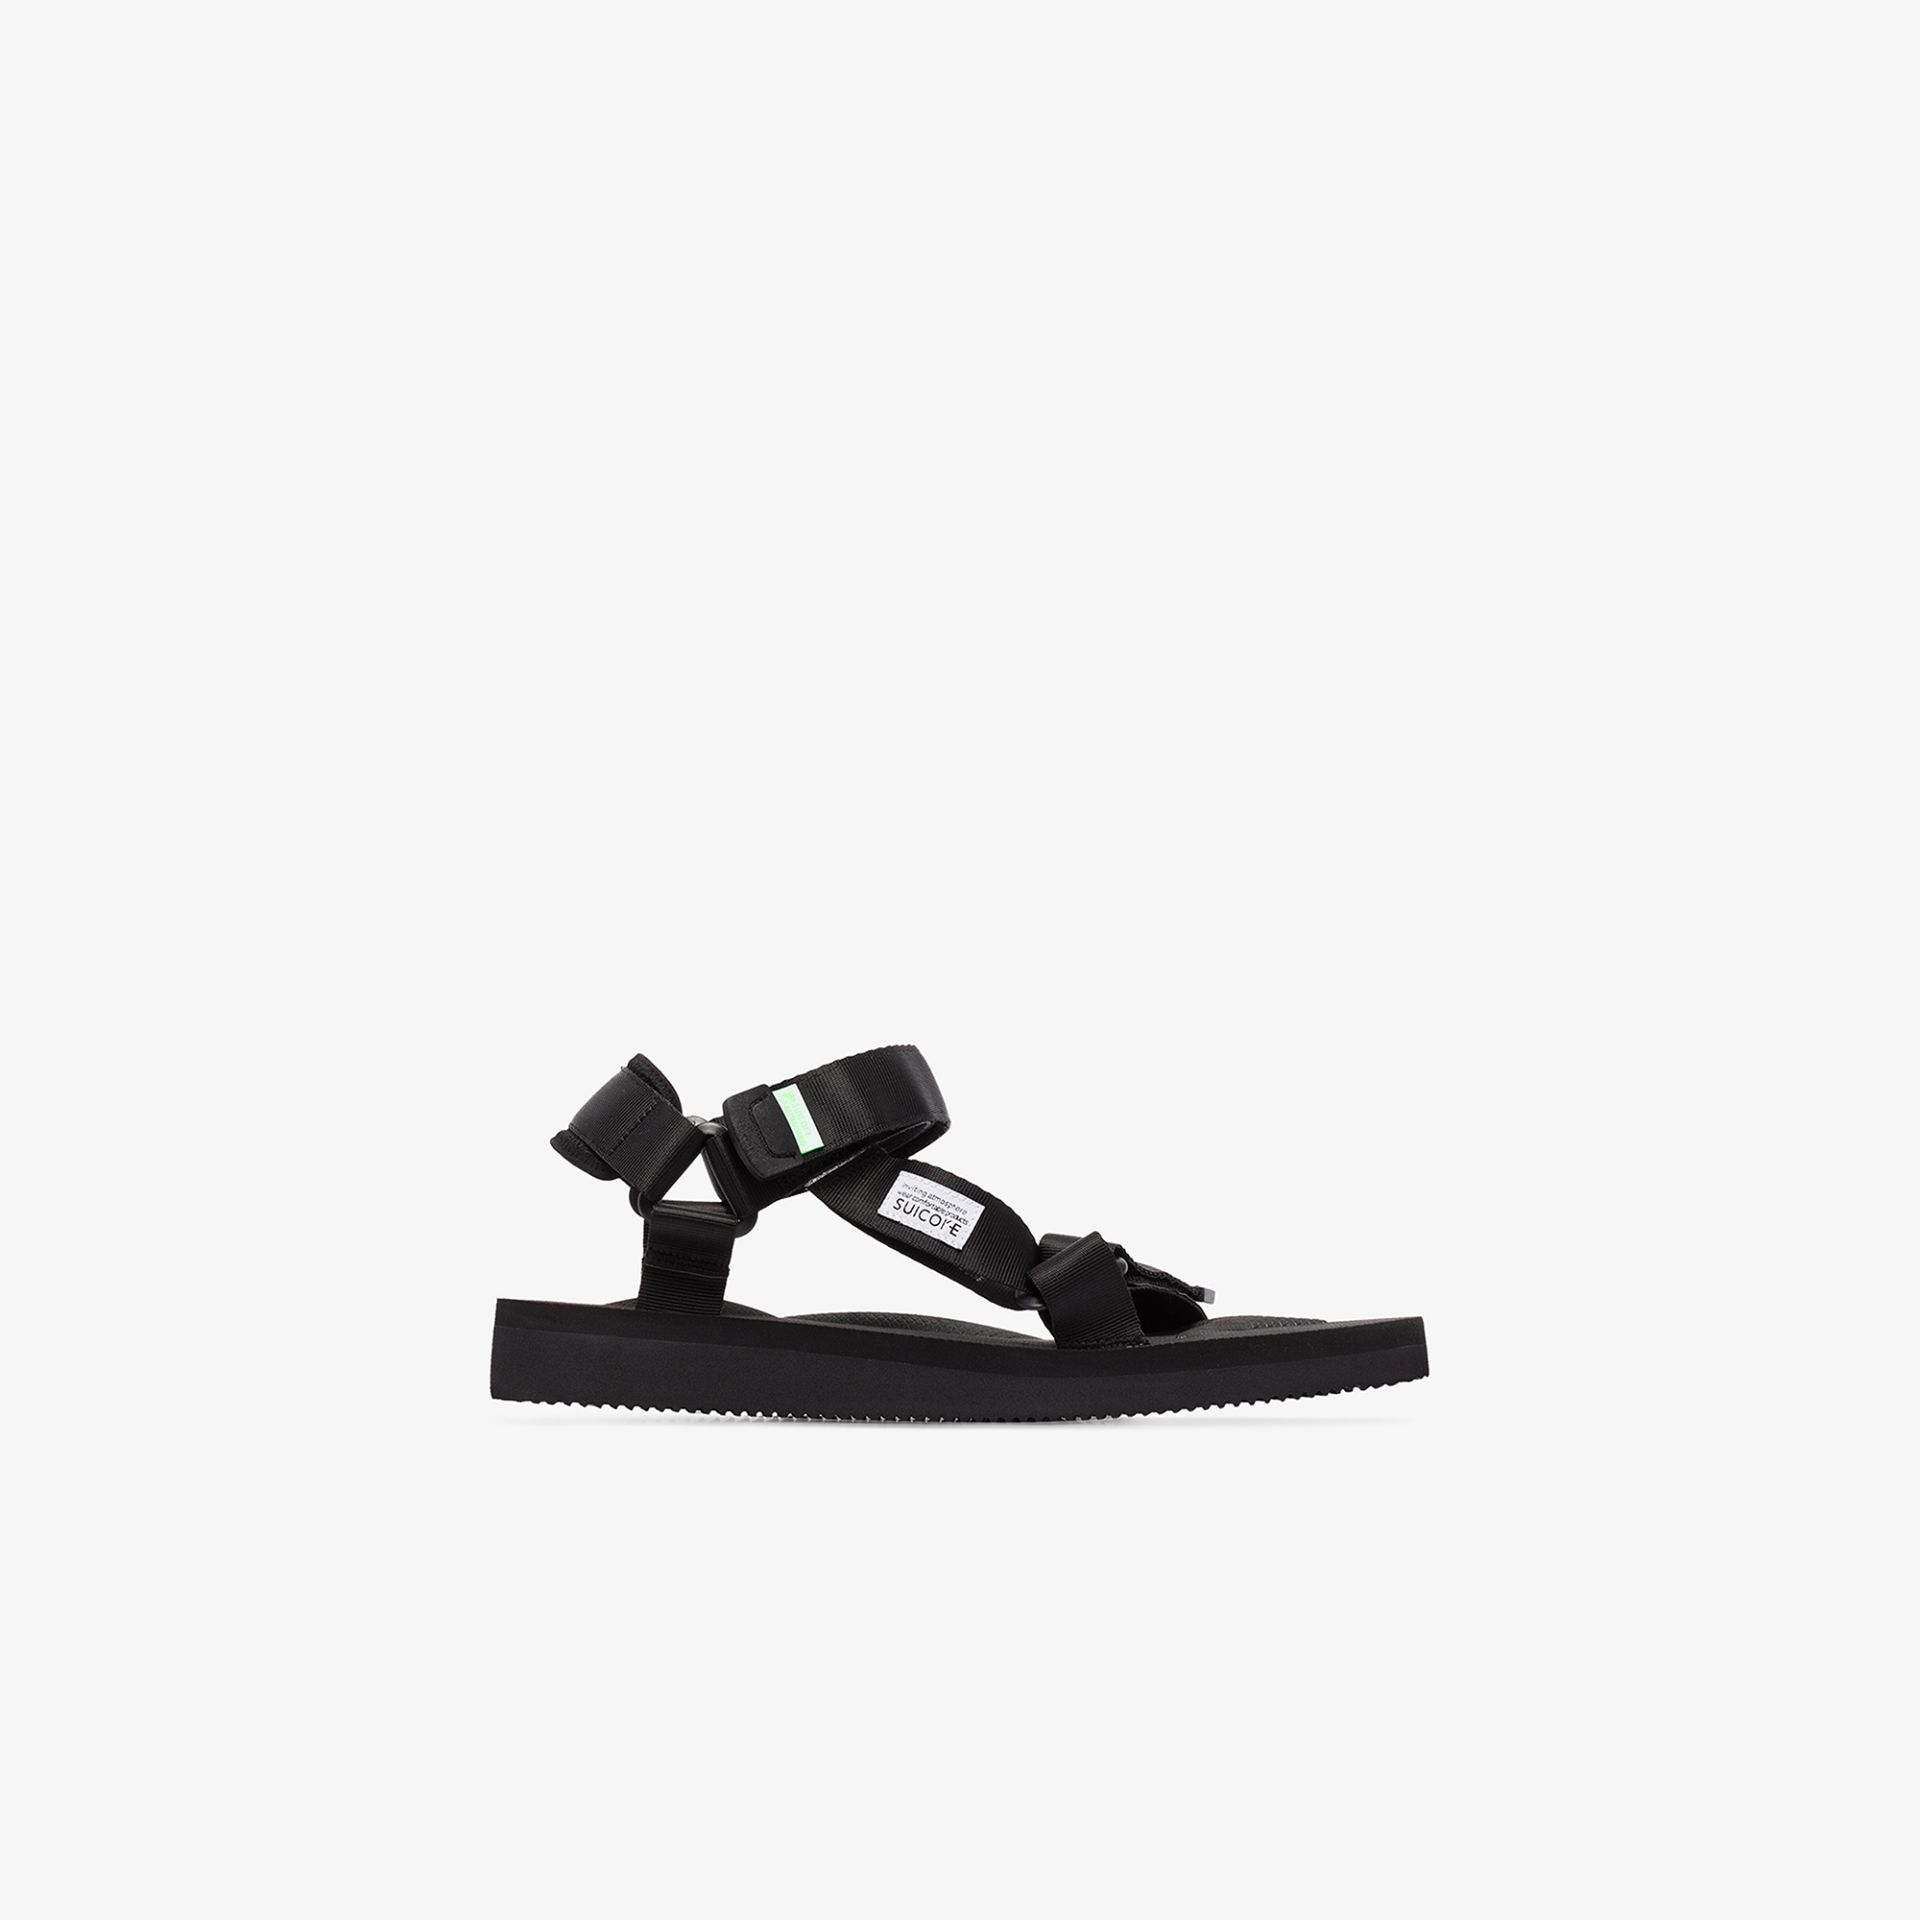 Suicoke black DEPA-Cab strap sandals 